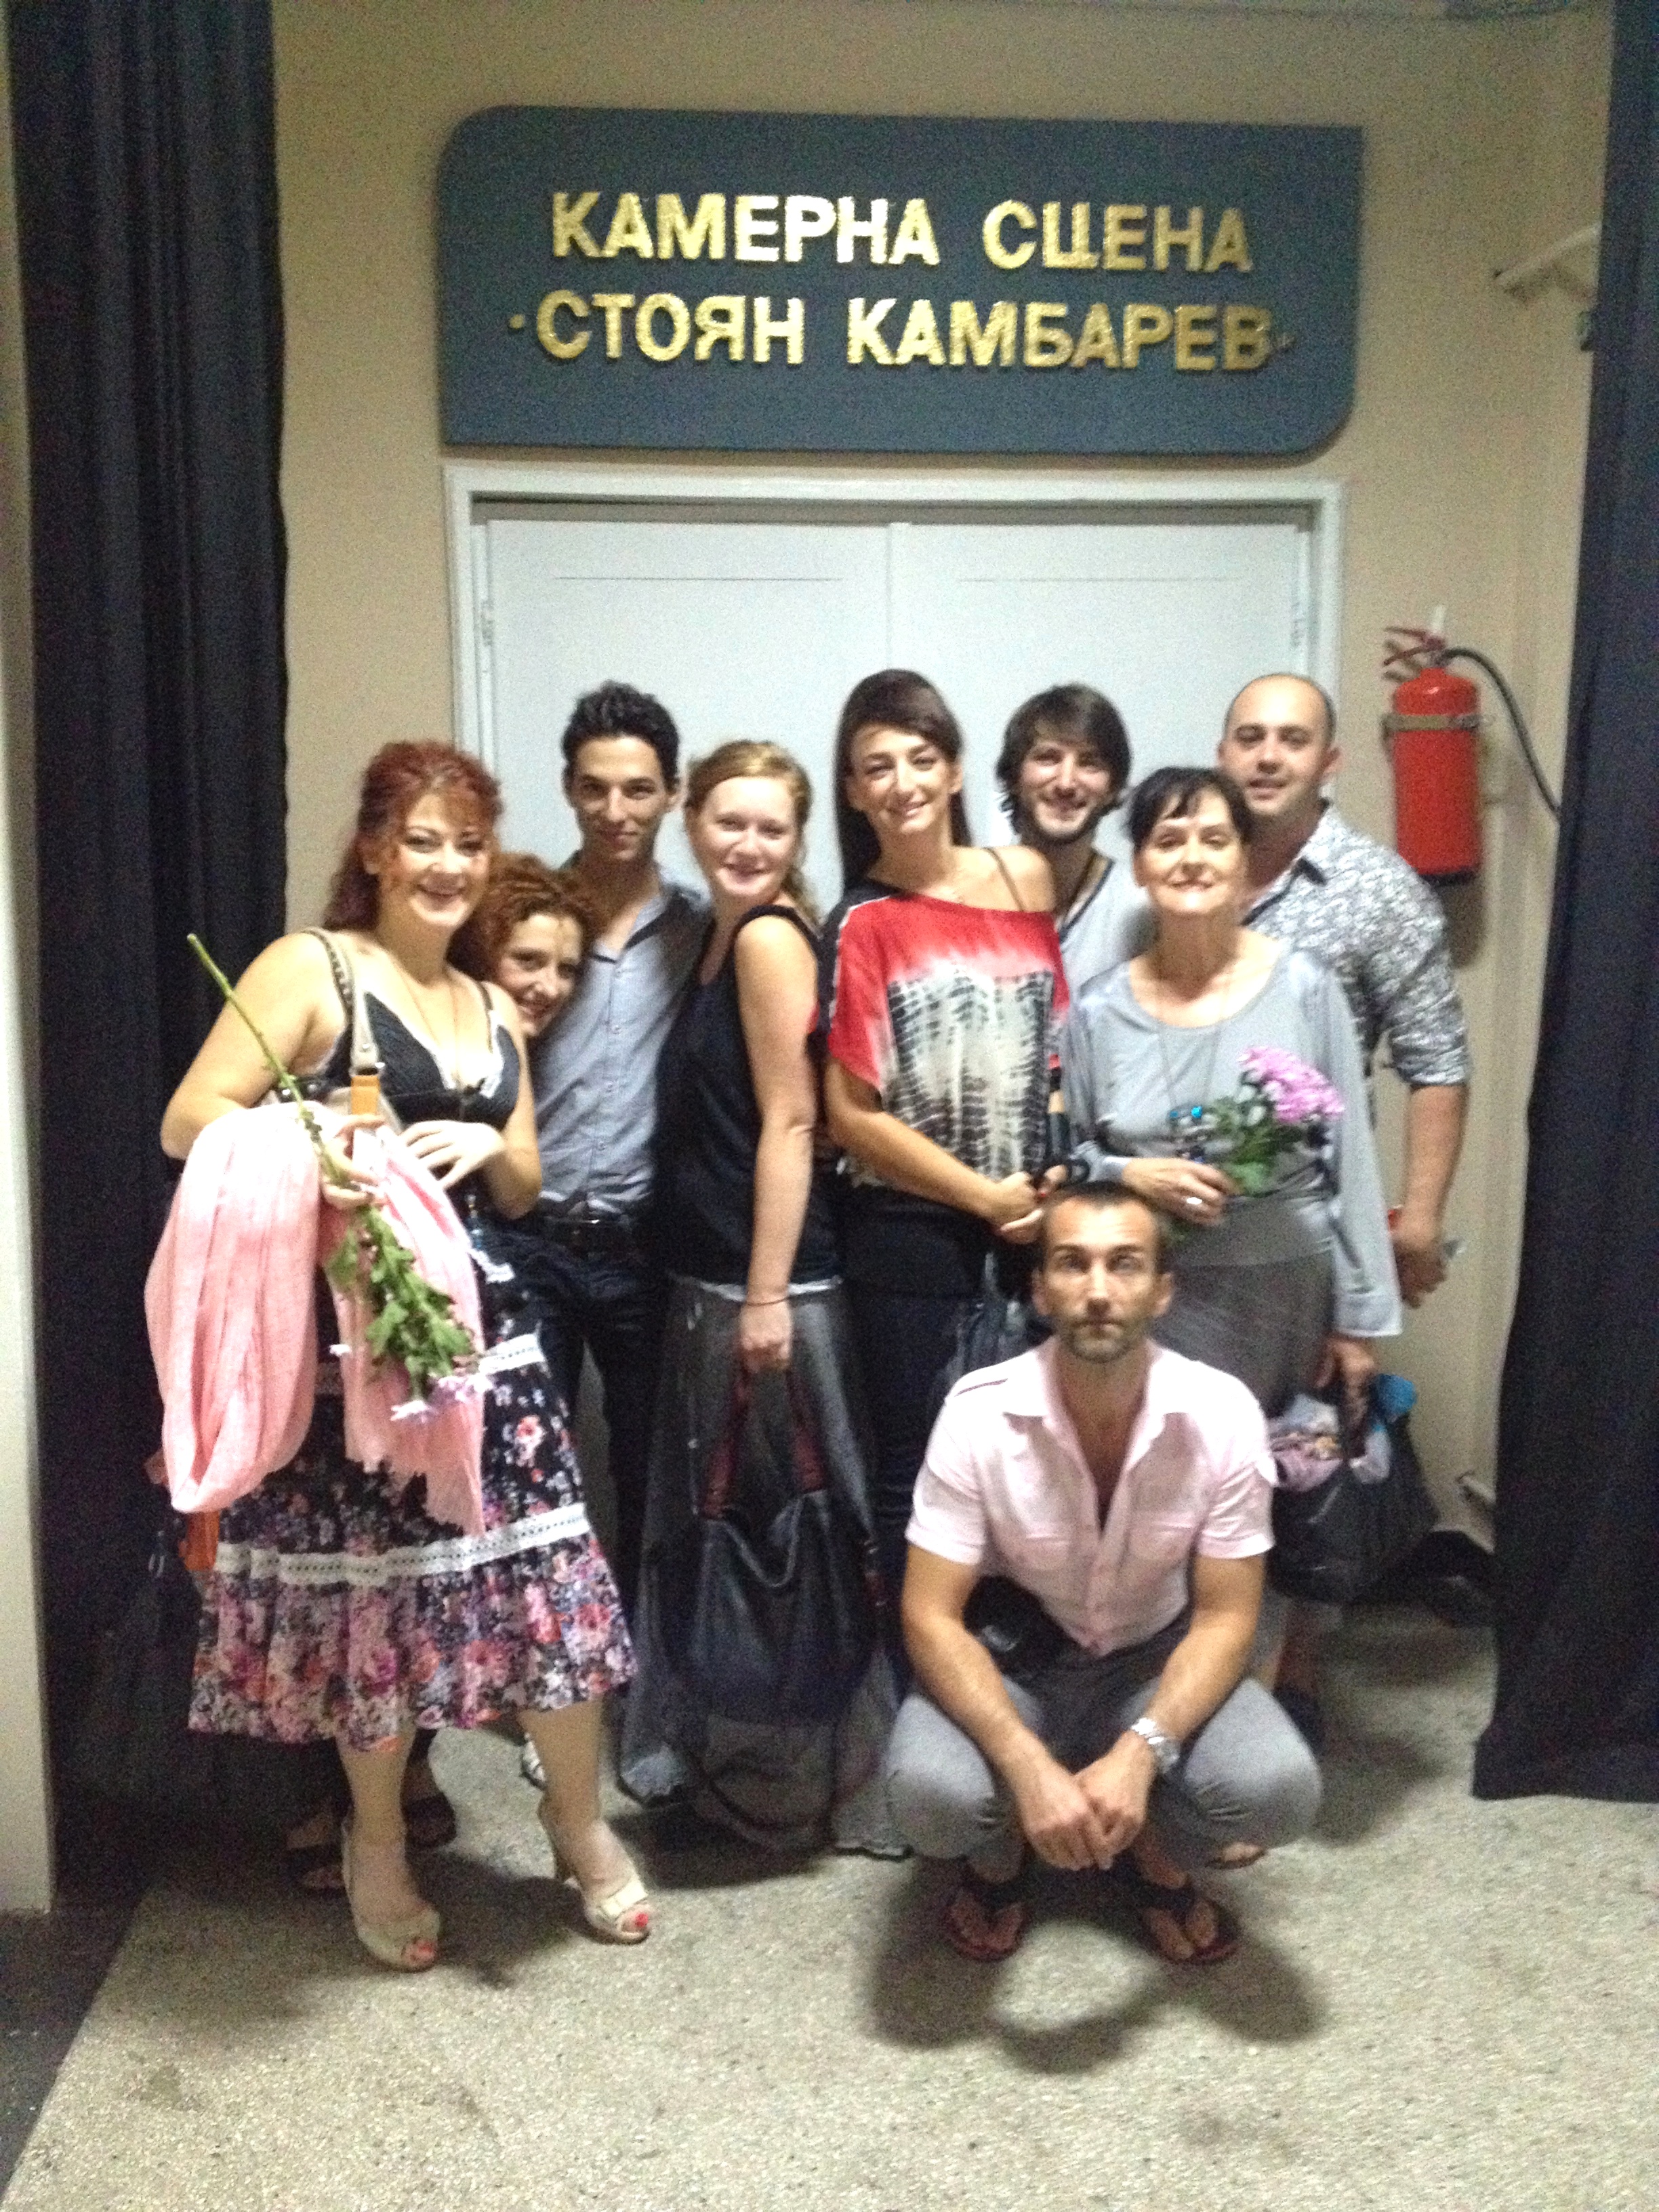 Откриха сцена „Стоян Камбарев” във варненския театър